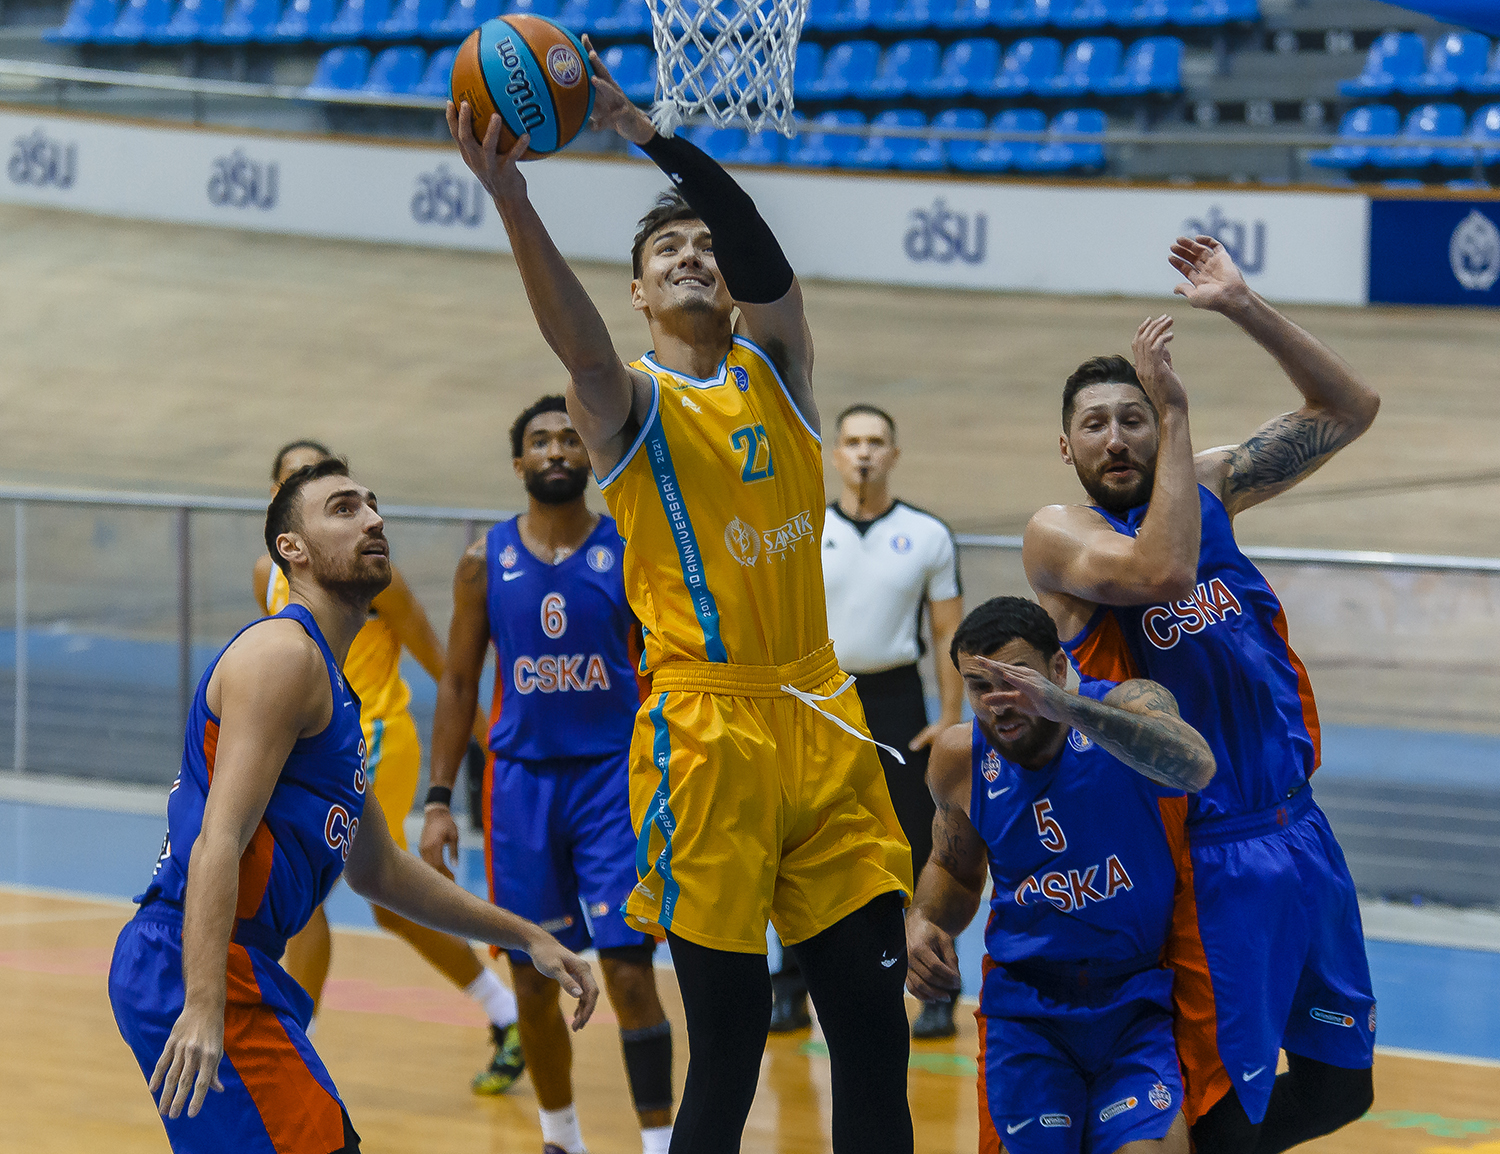 Баскетбол втб результаты сегодня единая. Лига ВТБ баскетбол. Астана (баскетбольный клуб). Msk баскетбол. Лига ВТБ фото.